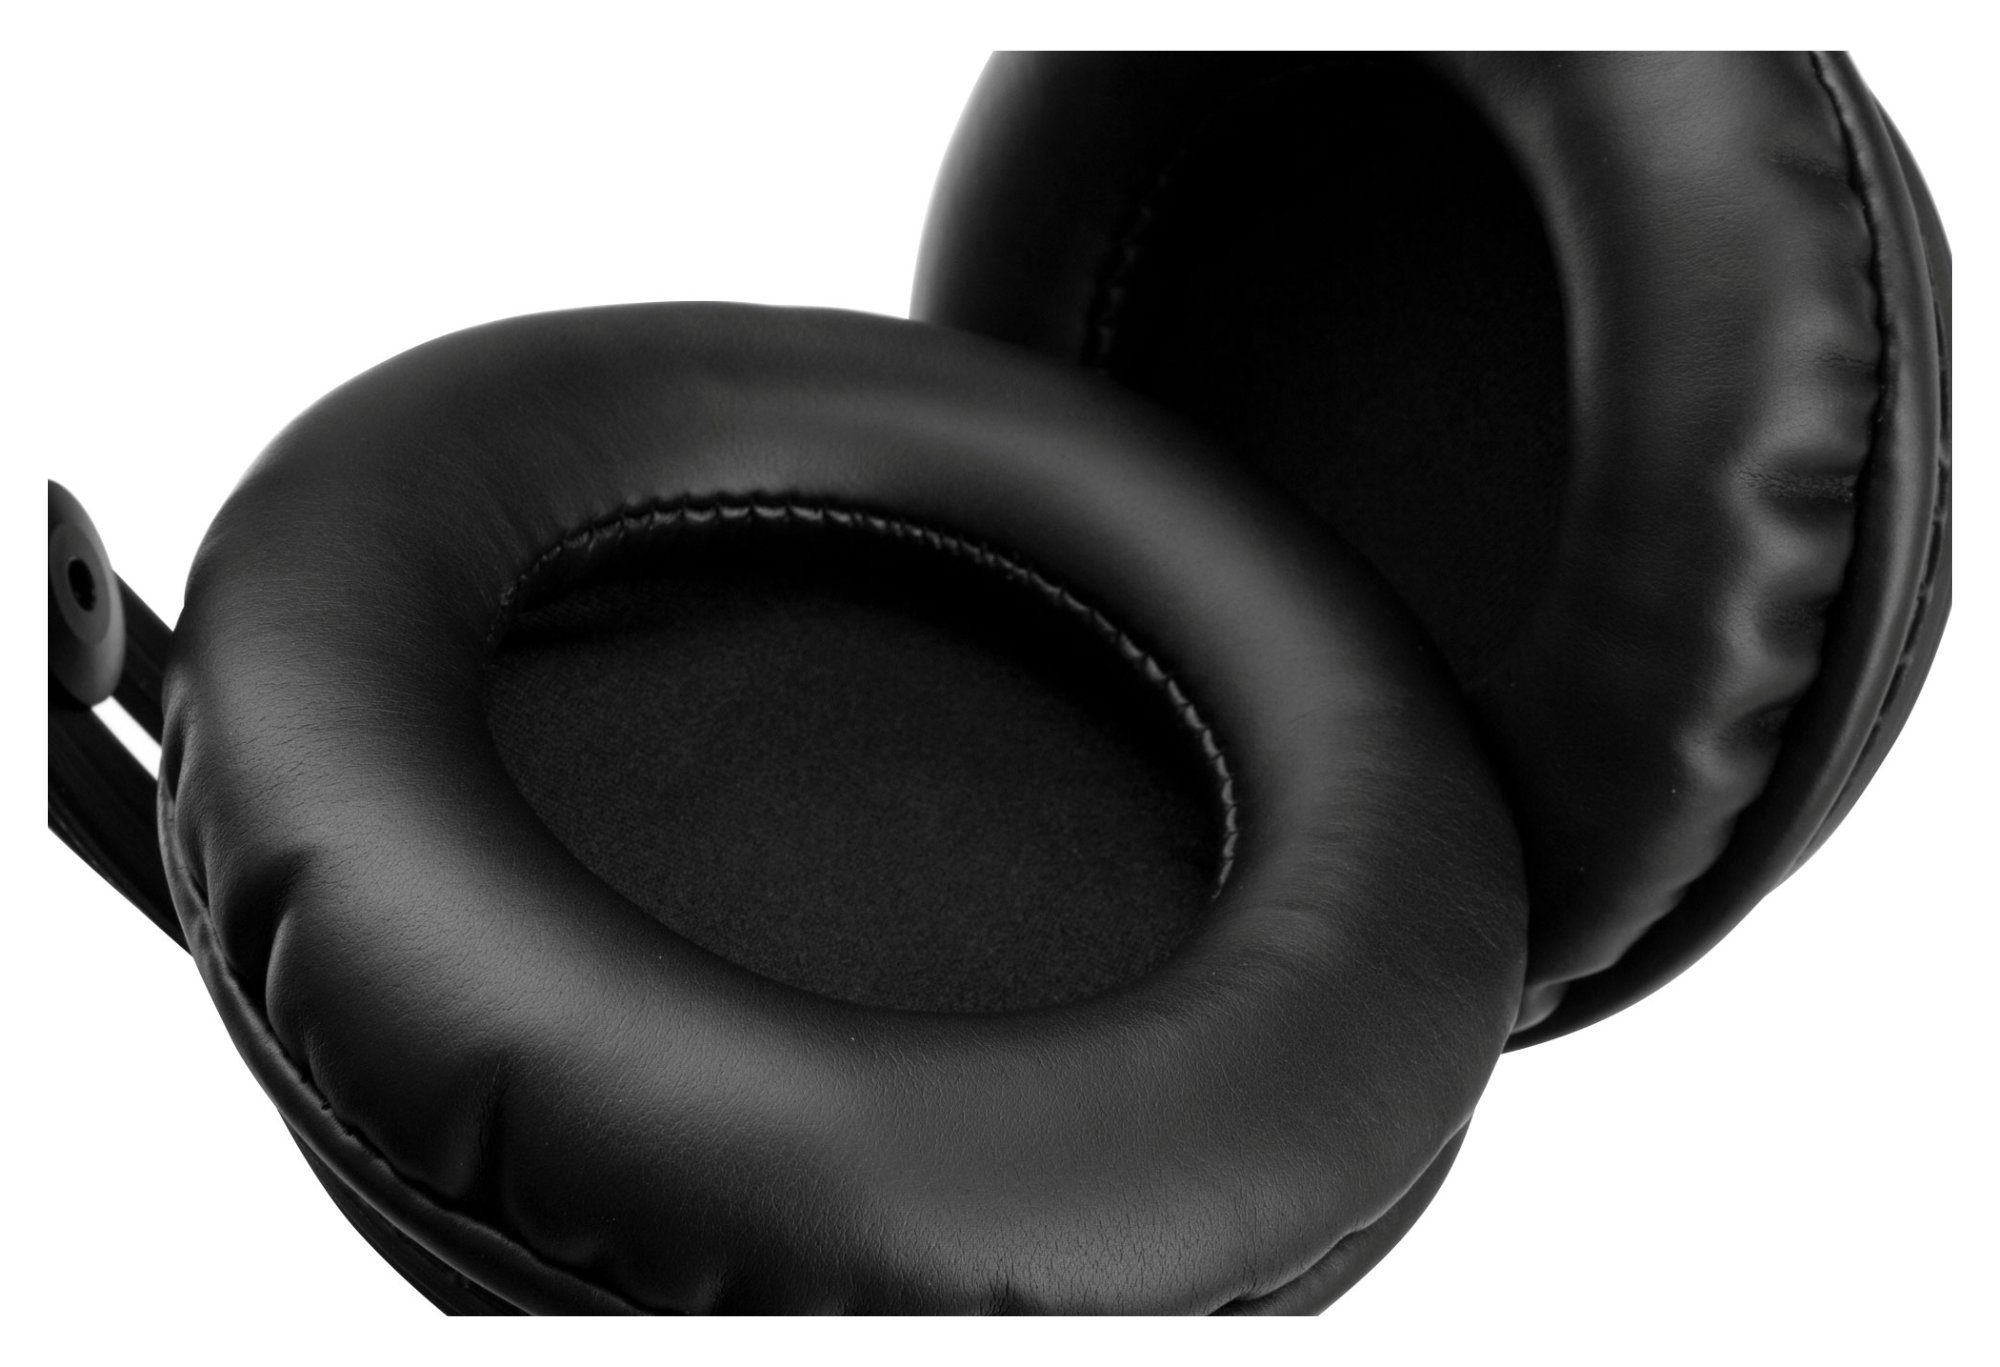 Höhen brillanten KH-900 Comfort und HiFi-Kopfhörer Bässen) Pronomic (Ausgewogener Klang mit präzisen